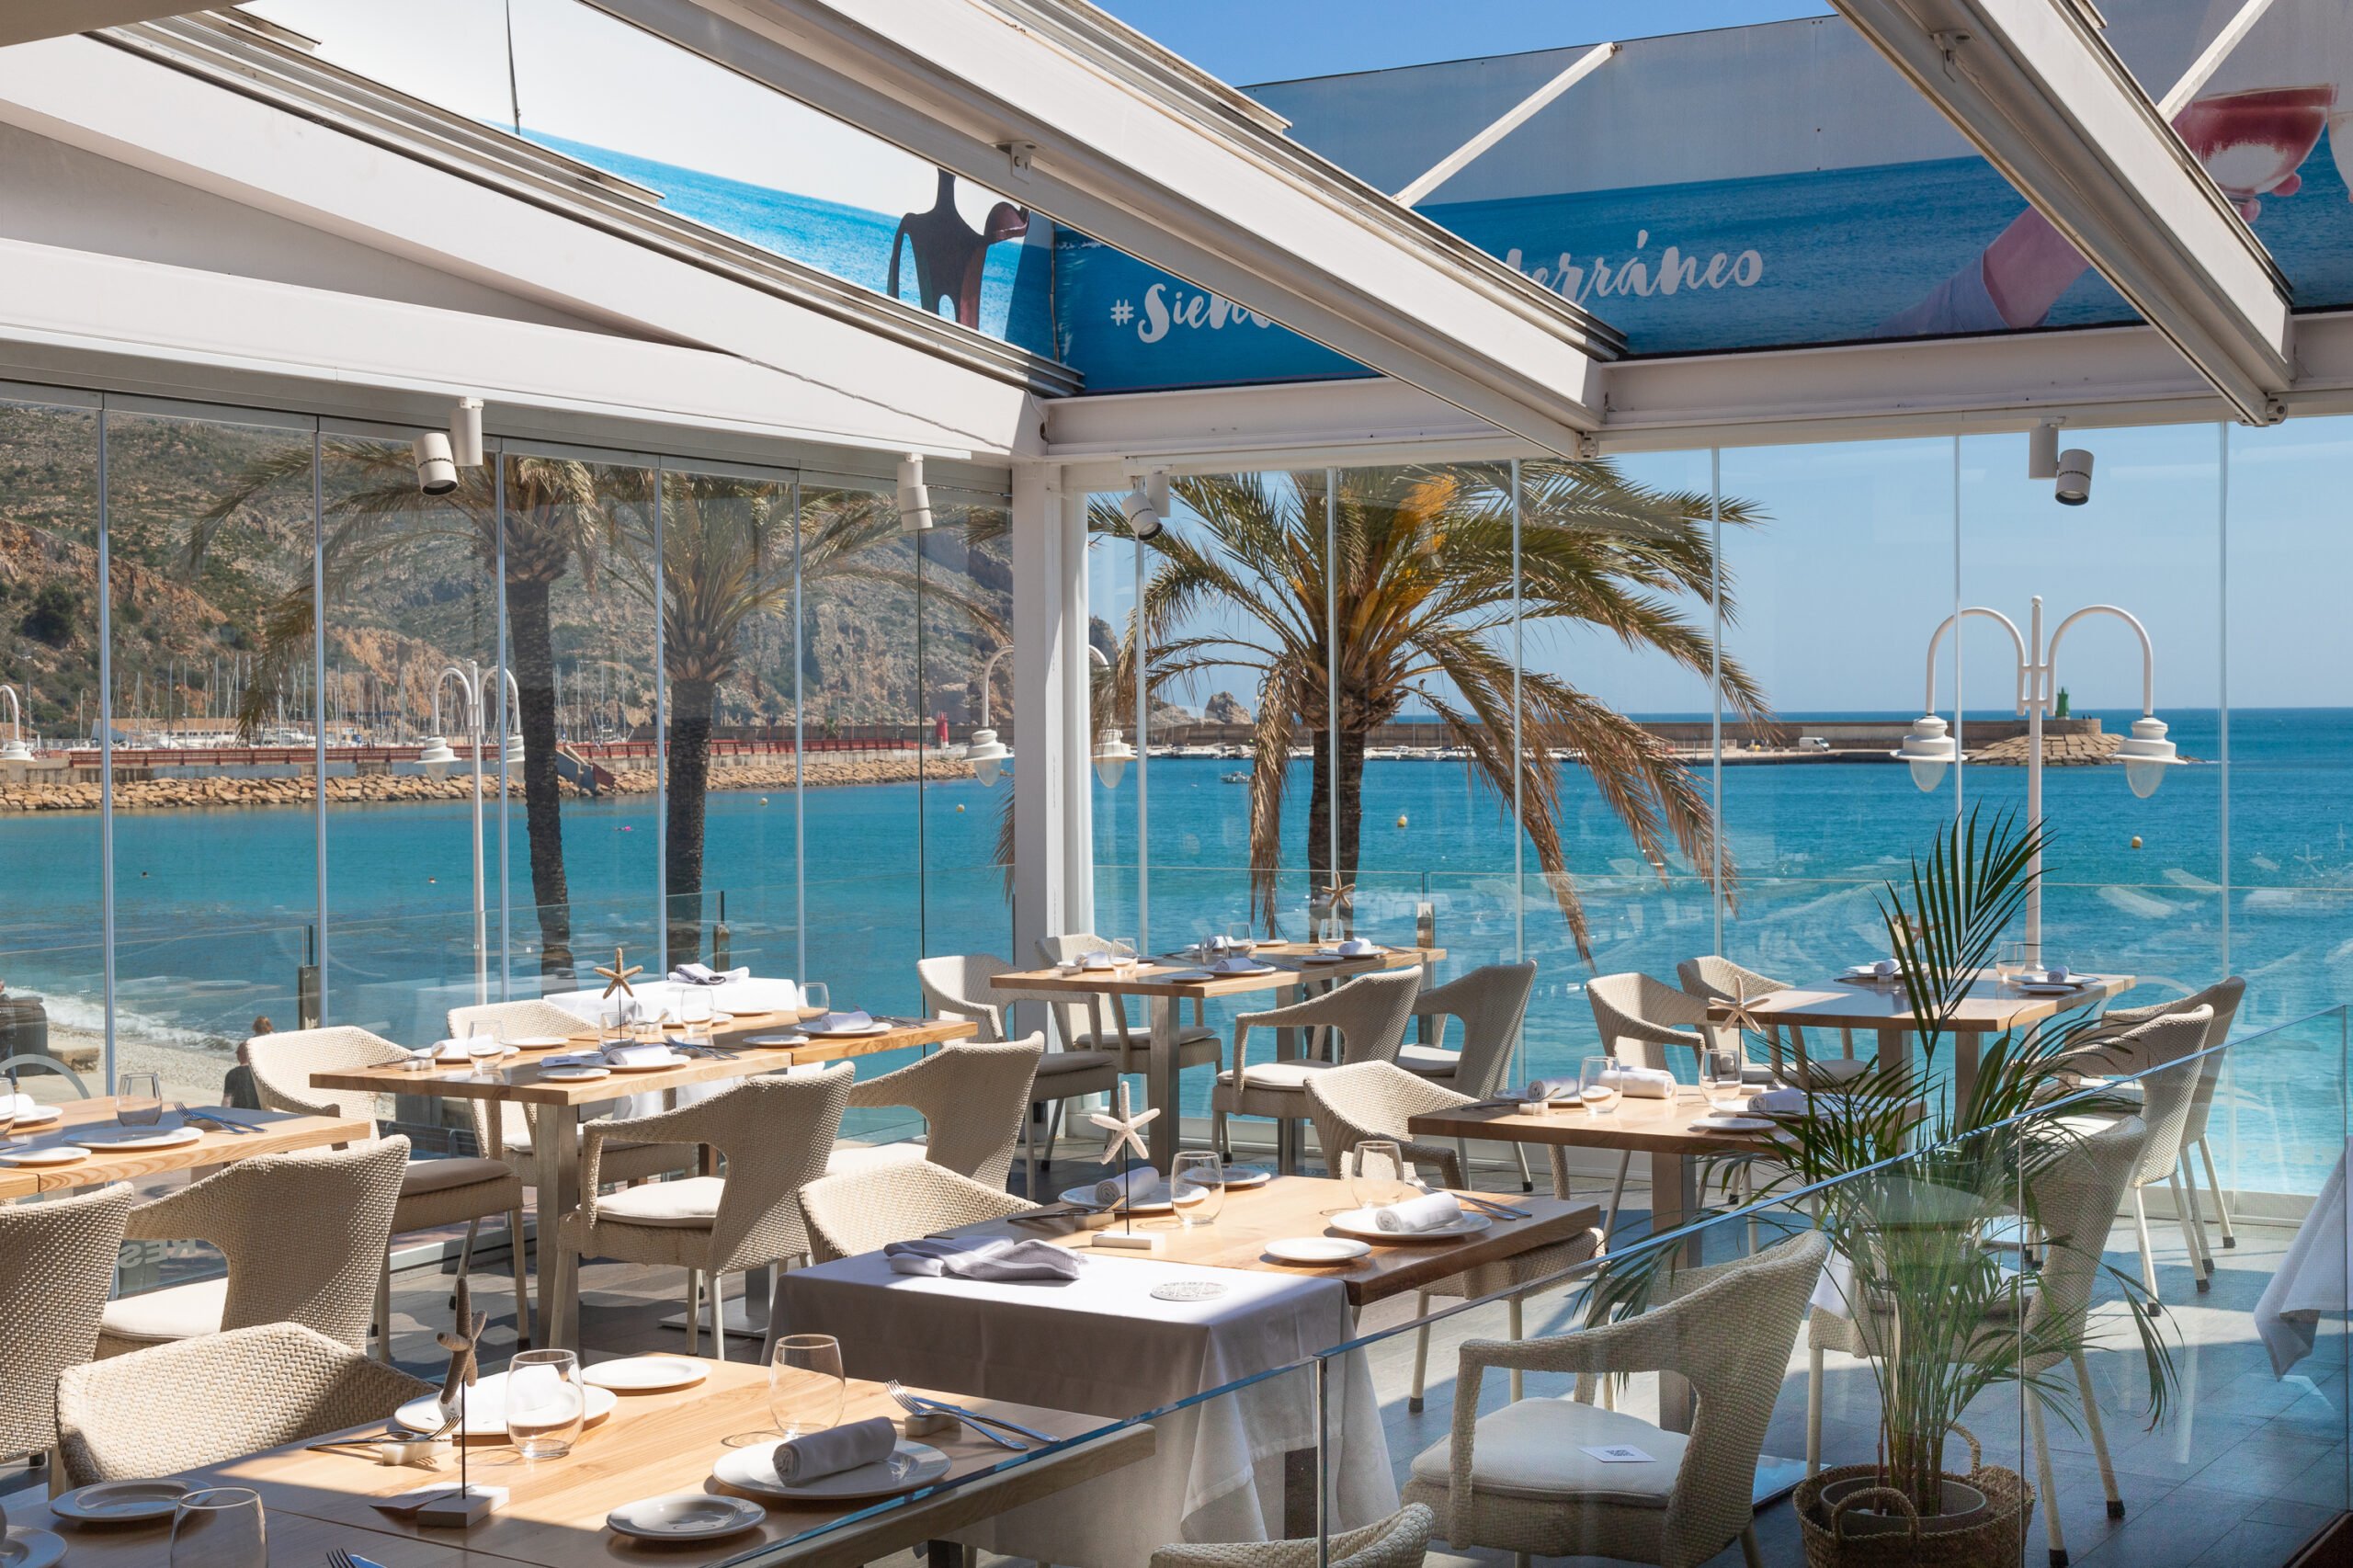 Restaurante mediterráneo con una gran variedad de platos